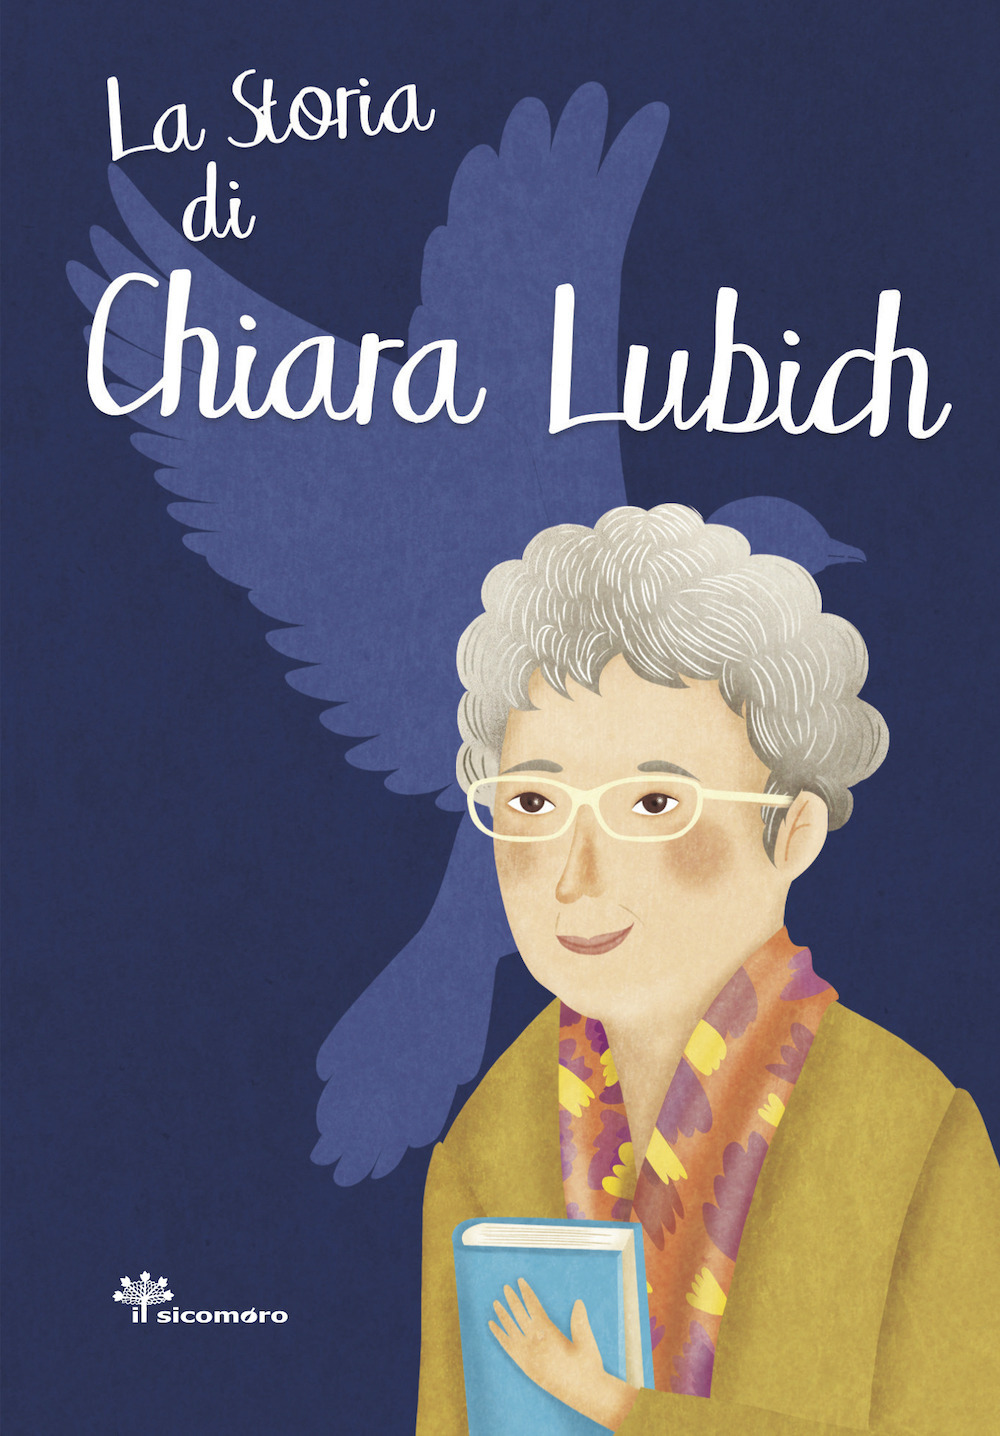 La storia di Chiara Lubich